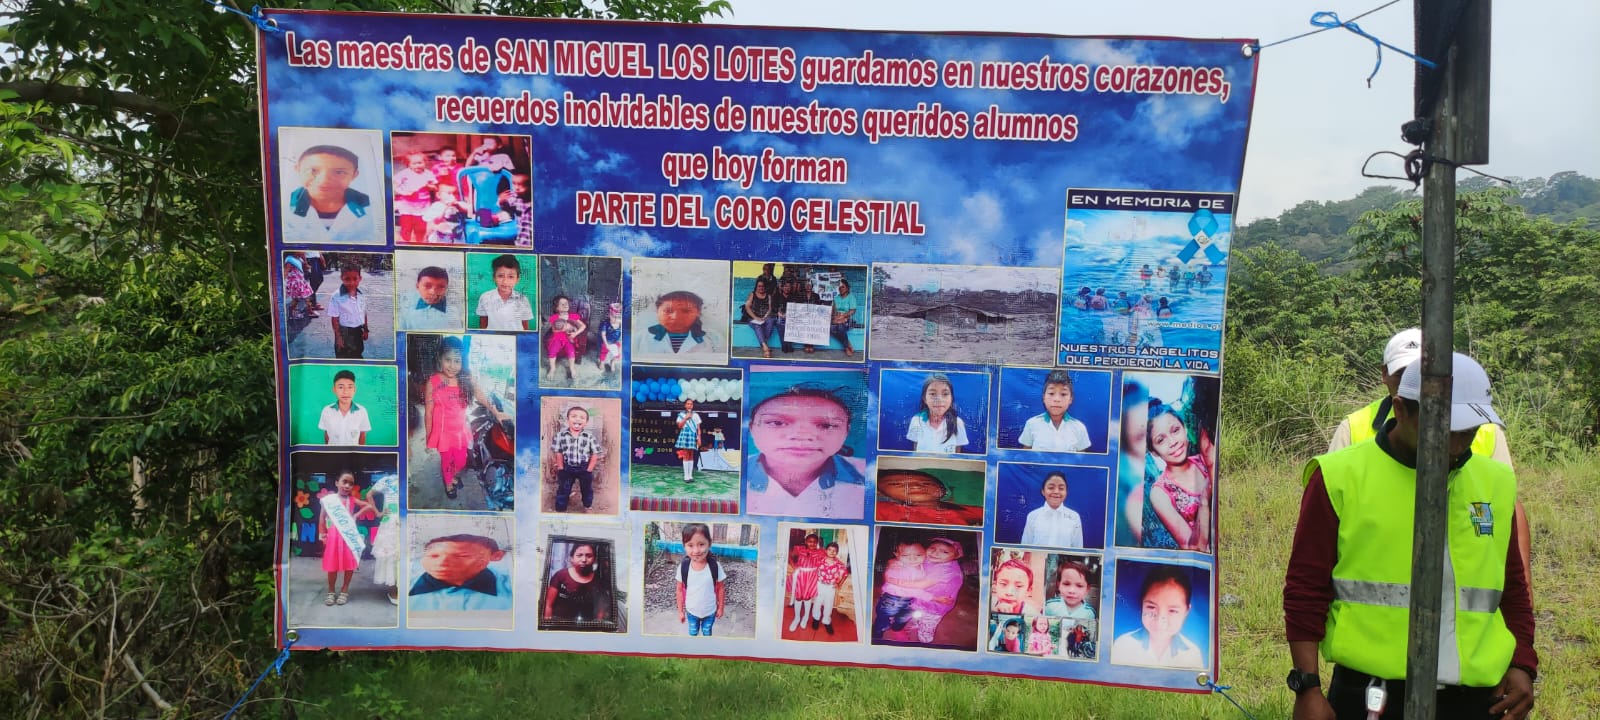 Este viernes 3 de junio se conmemora el quinto aniversario de la tragedia del Volcán de Fuego que dejó decenas de muertos en San Miguel Los Lotes. (Foto Prensa Libre: C. E. Paredes)